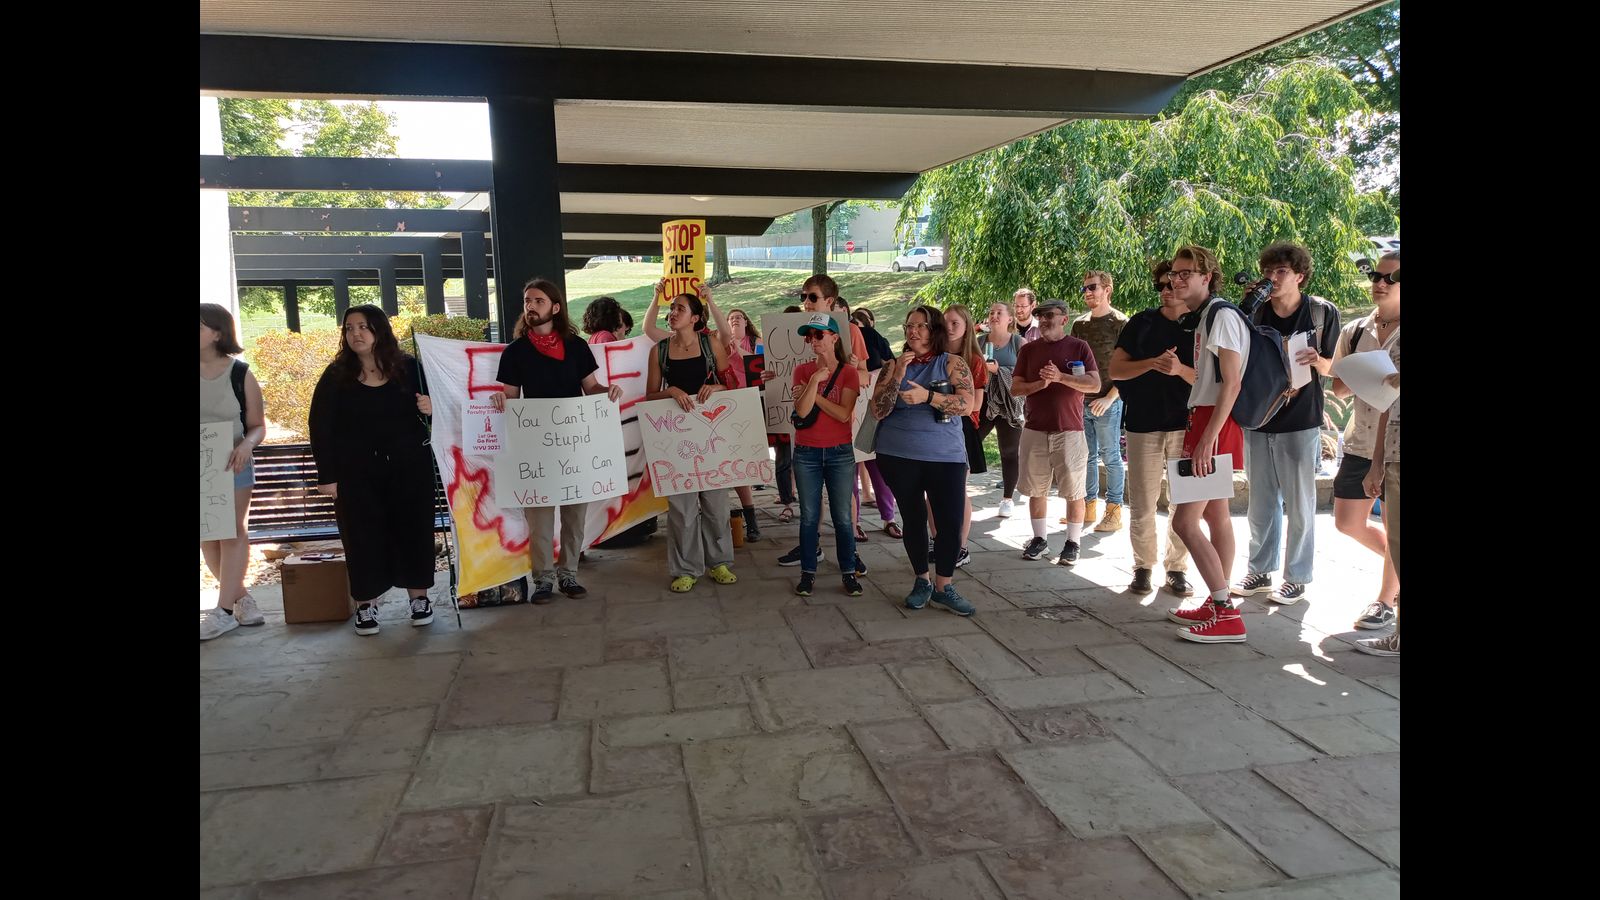 Die Proteste gegen Kürzungen an der West Virginia University dauern an, da der Gesetzgeber Dutzende Millionen für kriegsbezogene Forschung bereitstellt